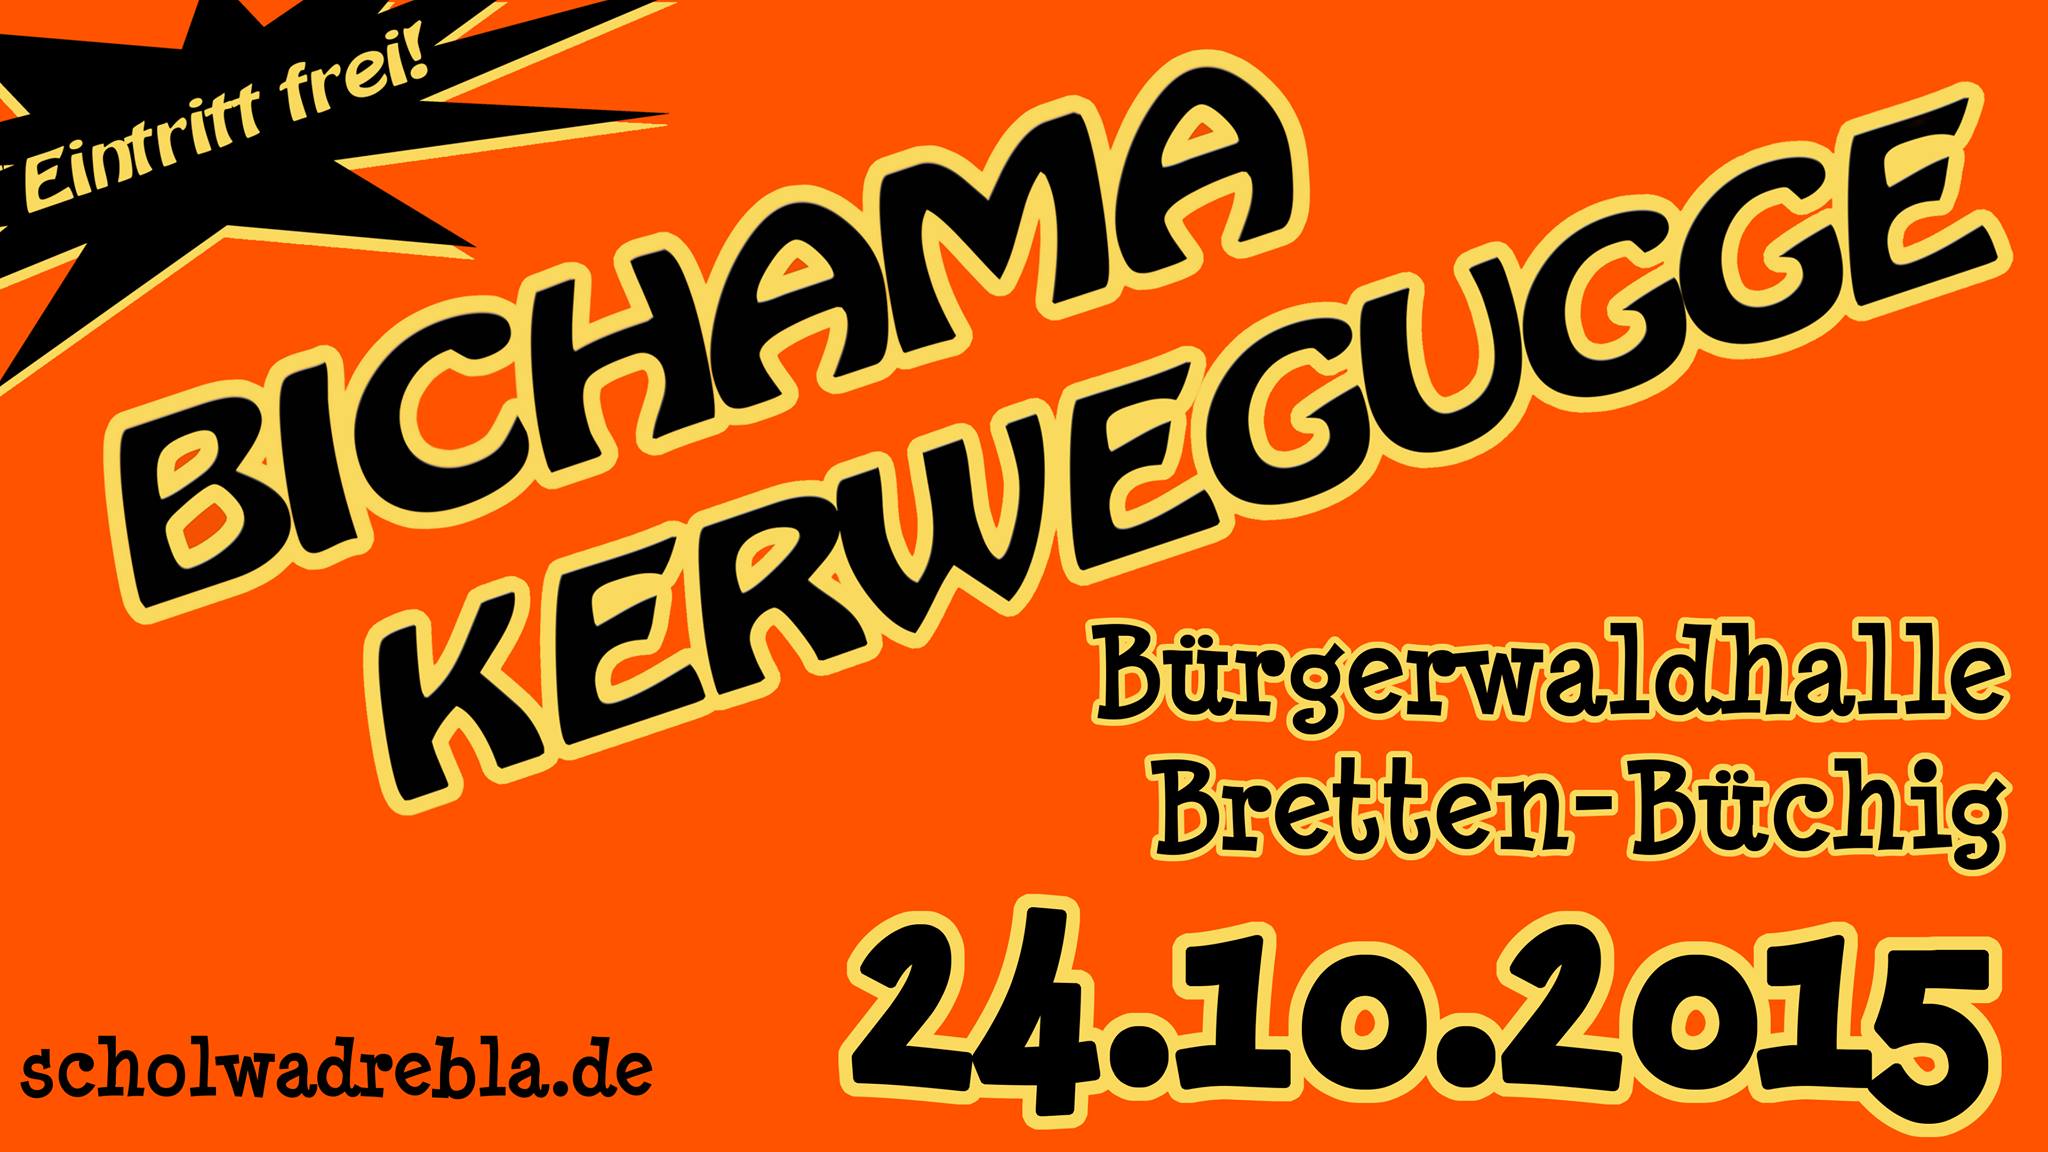 bichama_kerwegugge_